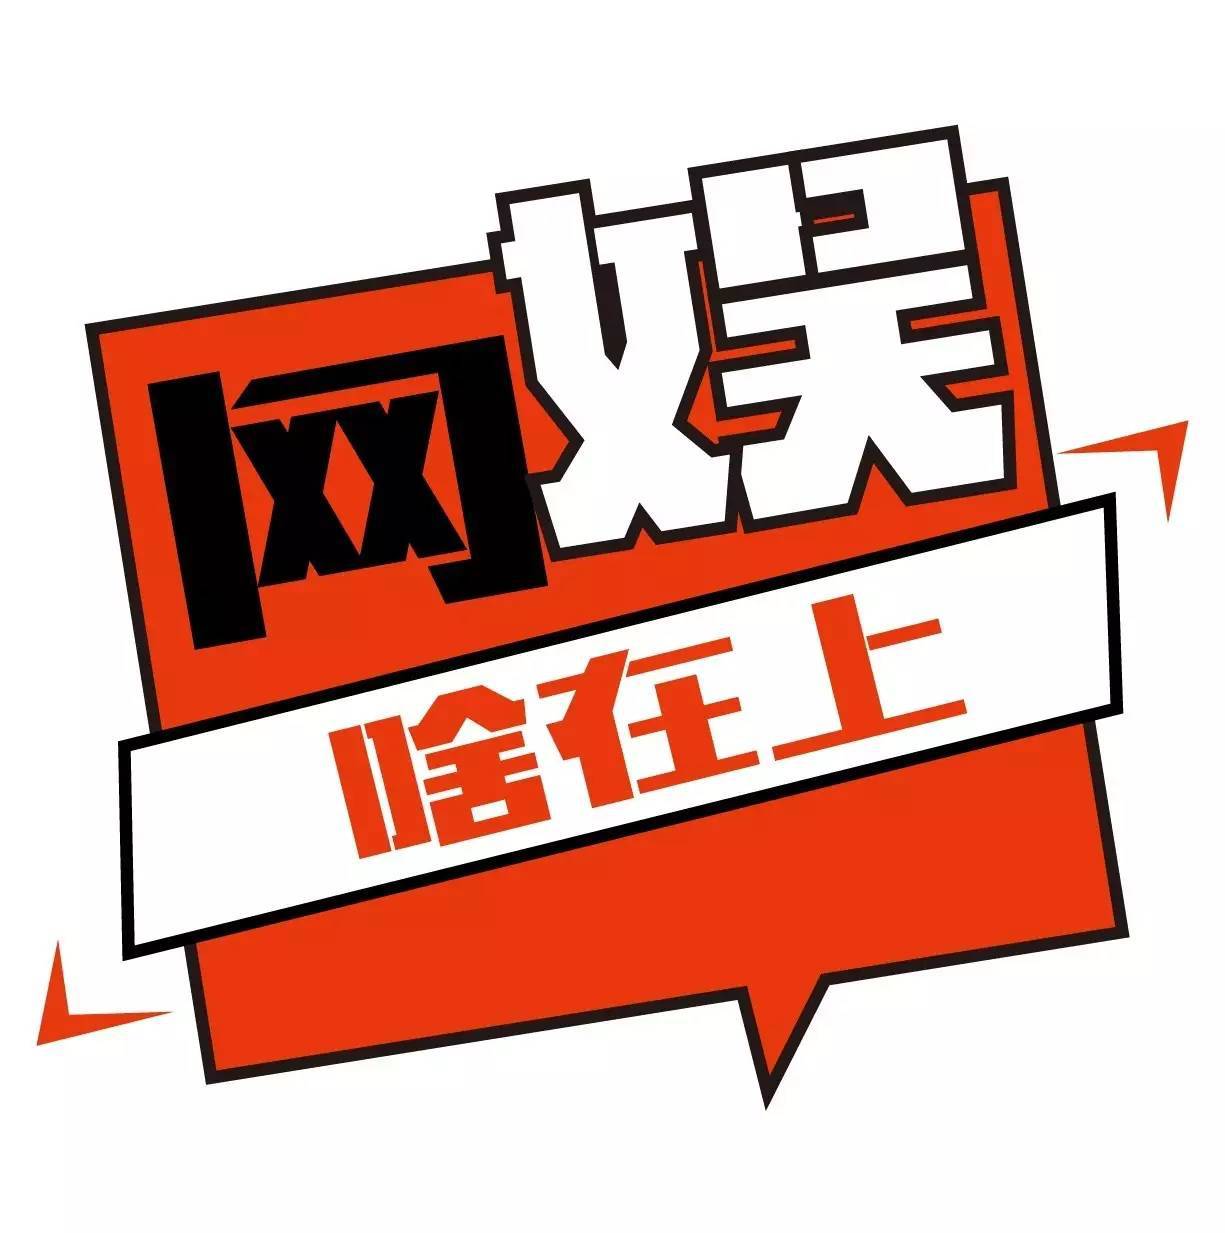 网娱啥在上丨陈小春《反黑》建党节献映 高口碑警匪剧《卧底》收官